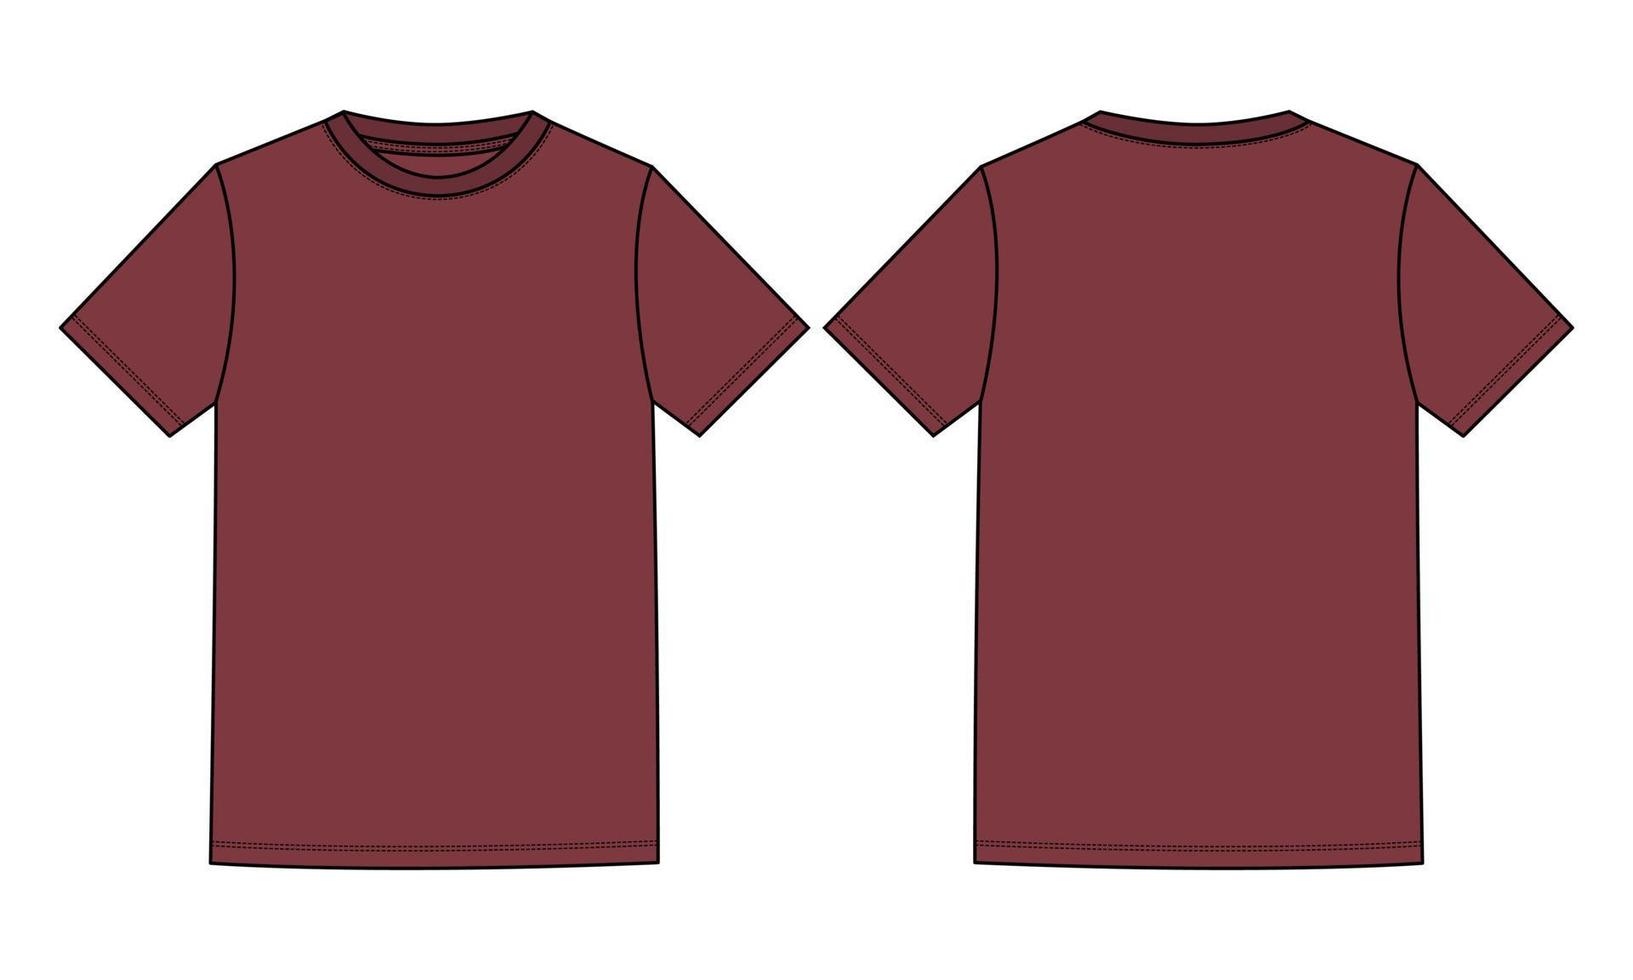 kortärmad grundläggande t-shirt tekniskt mode platt skiss vektorillustration djupröd färg mall fram- och bakvyer isolerad på vit bakgrund. vektor